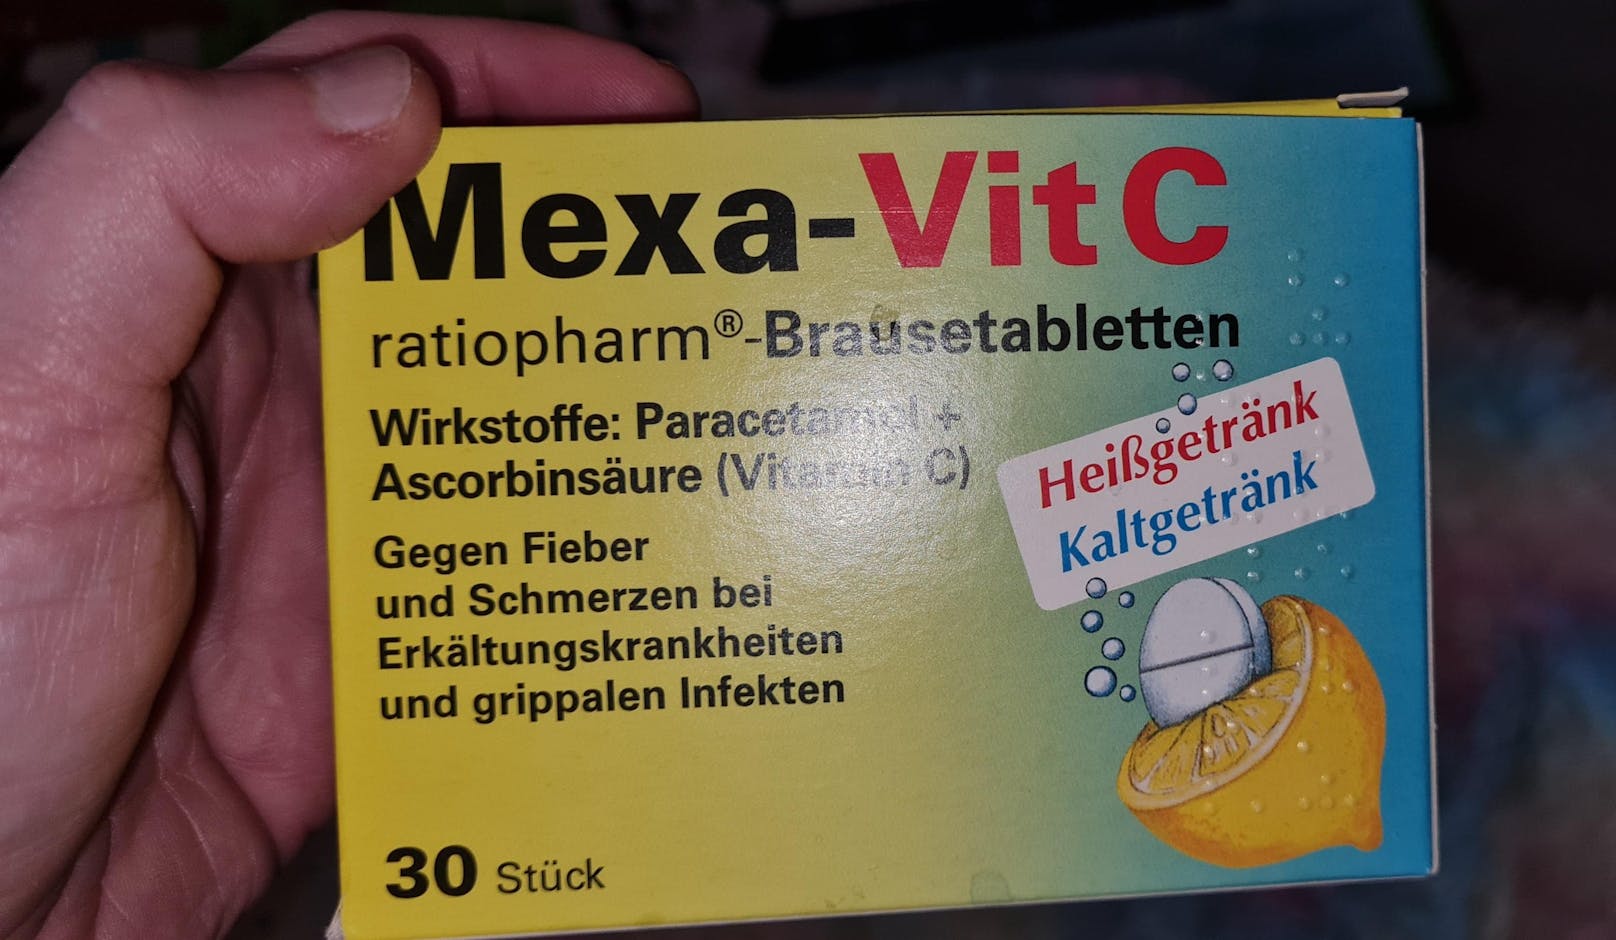 Diverse Medikamente wie Mexa-Vit C sind derzeit schwer erhältlich.